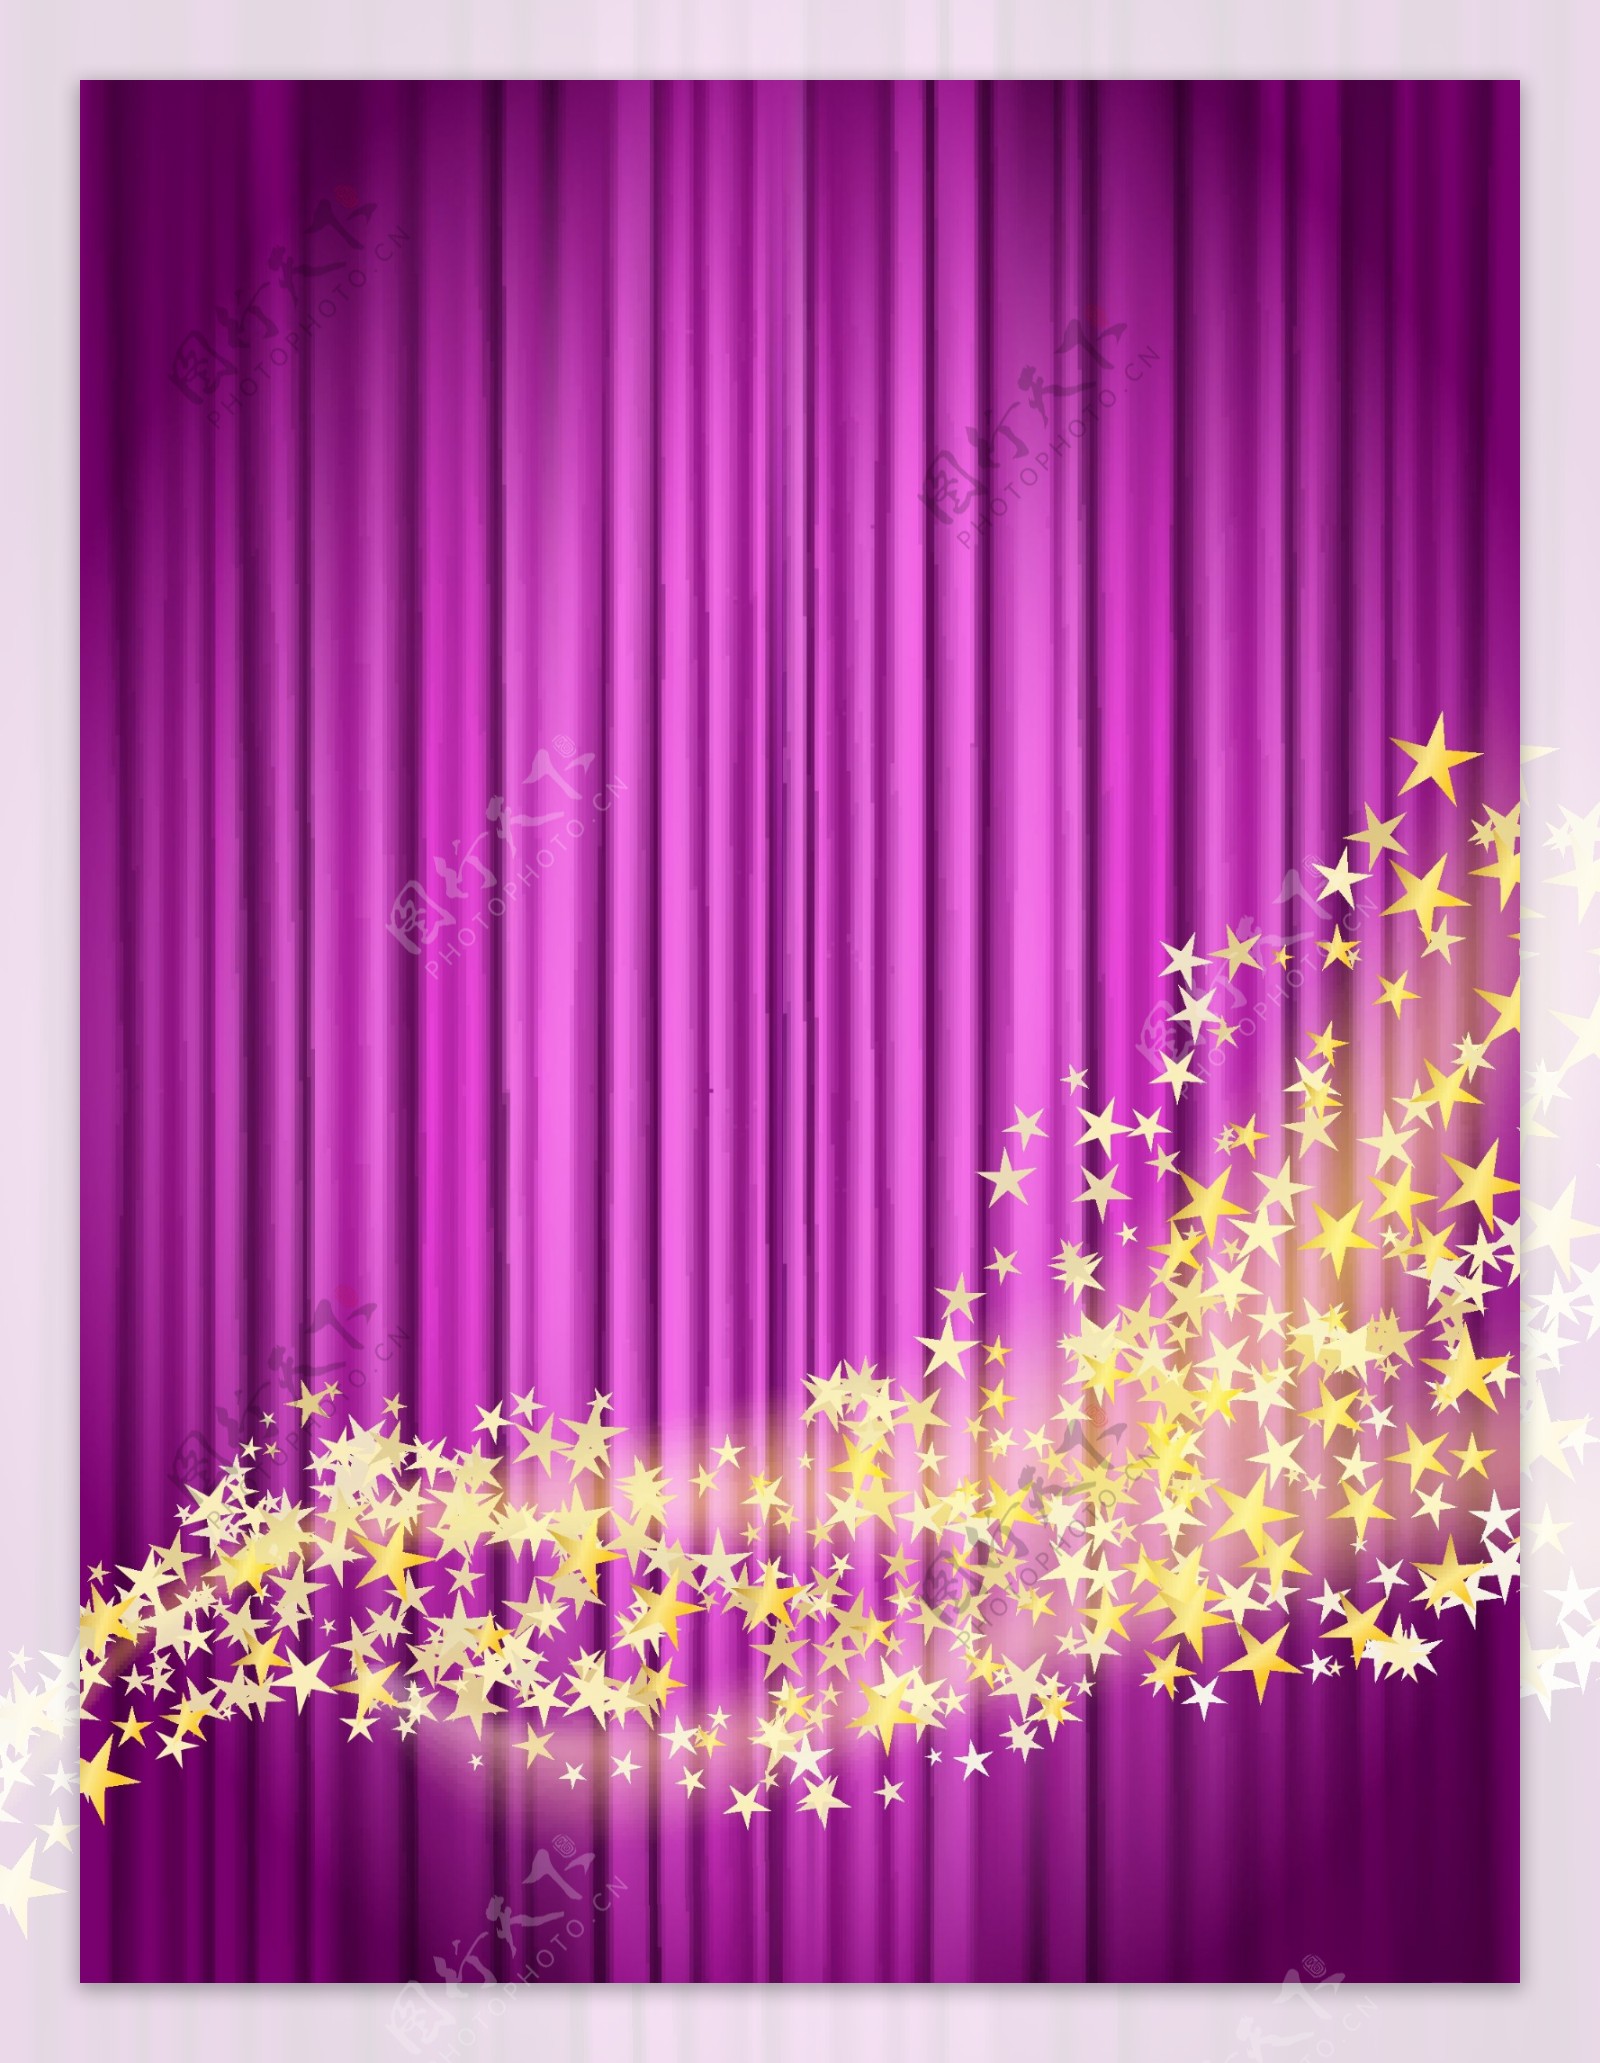 紫色窗帘梦幻星光魔法唯美背景